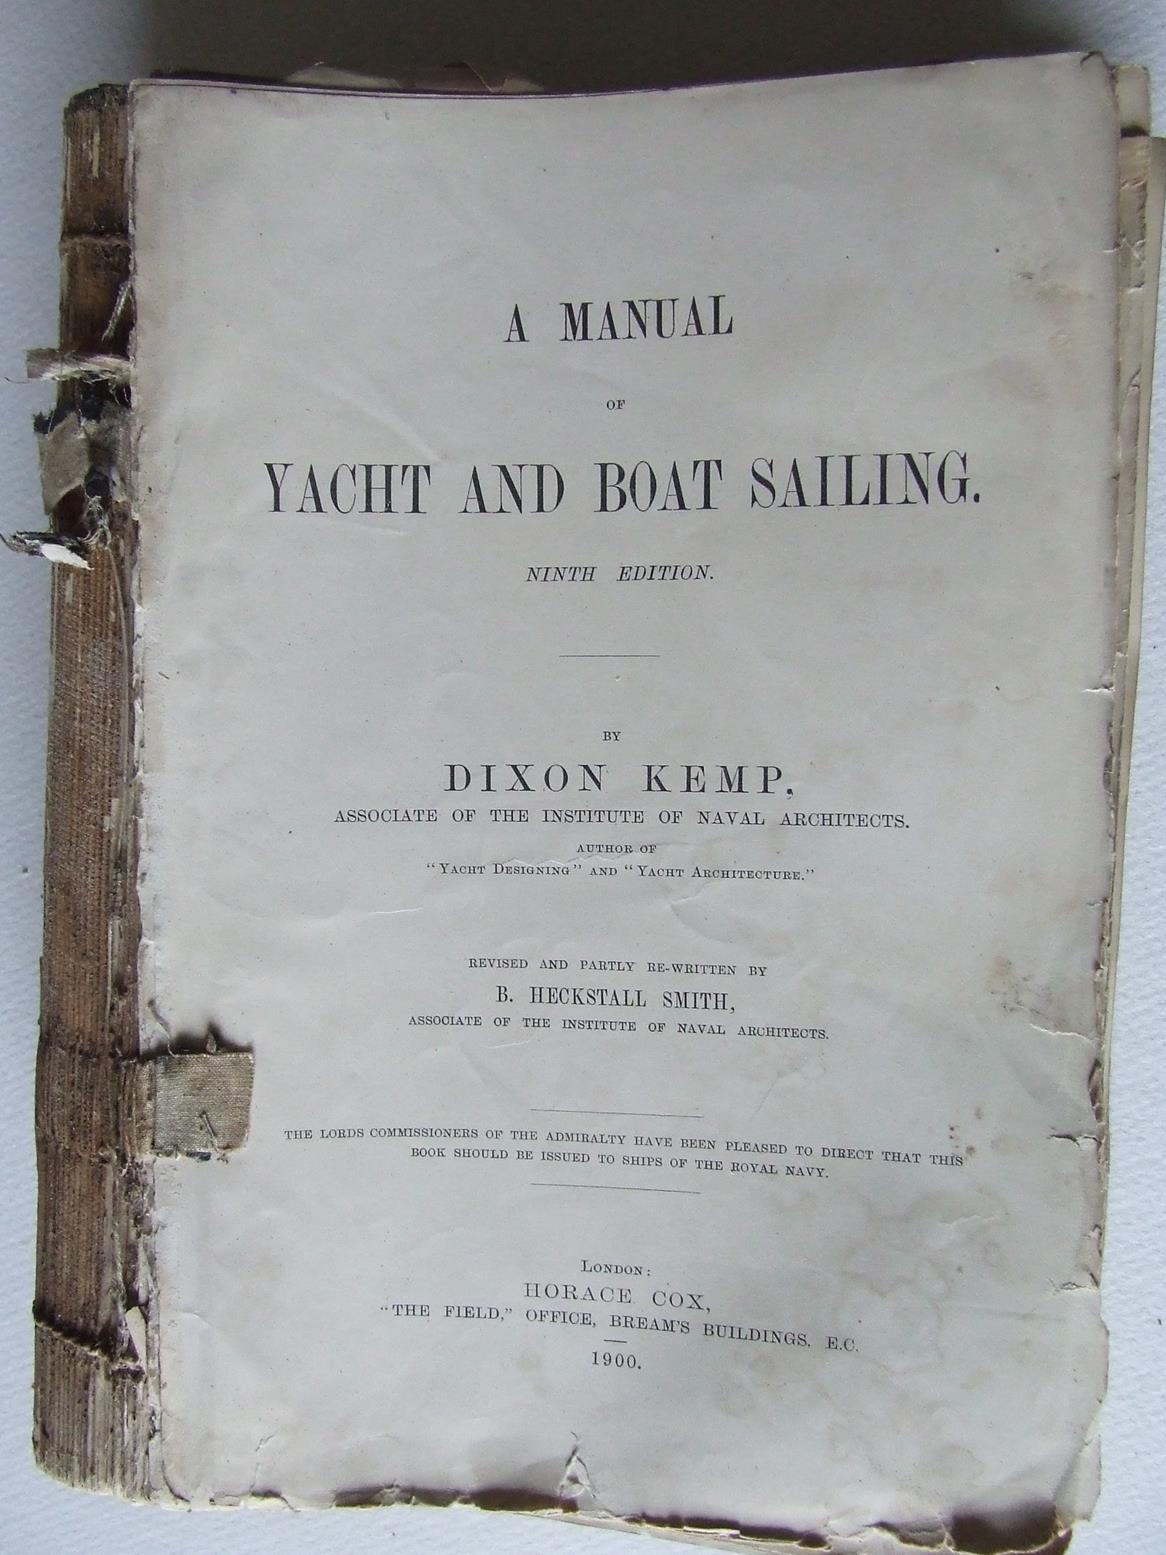 Manual of Yacht and Boat Sailing.  ninth edition.